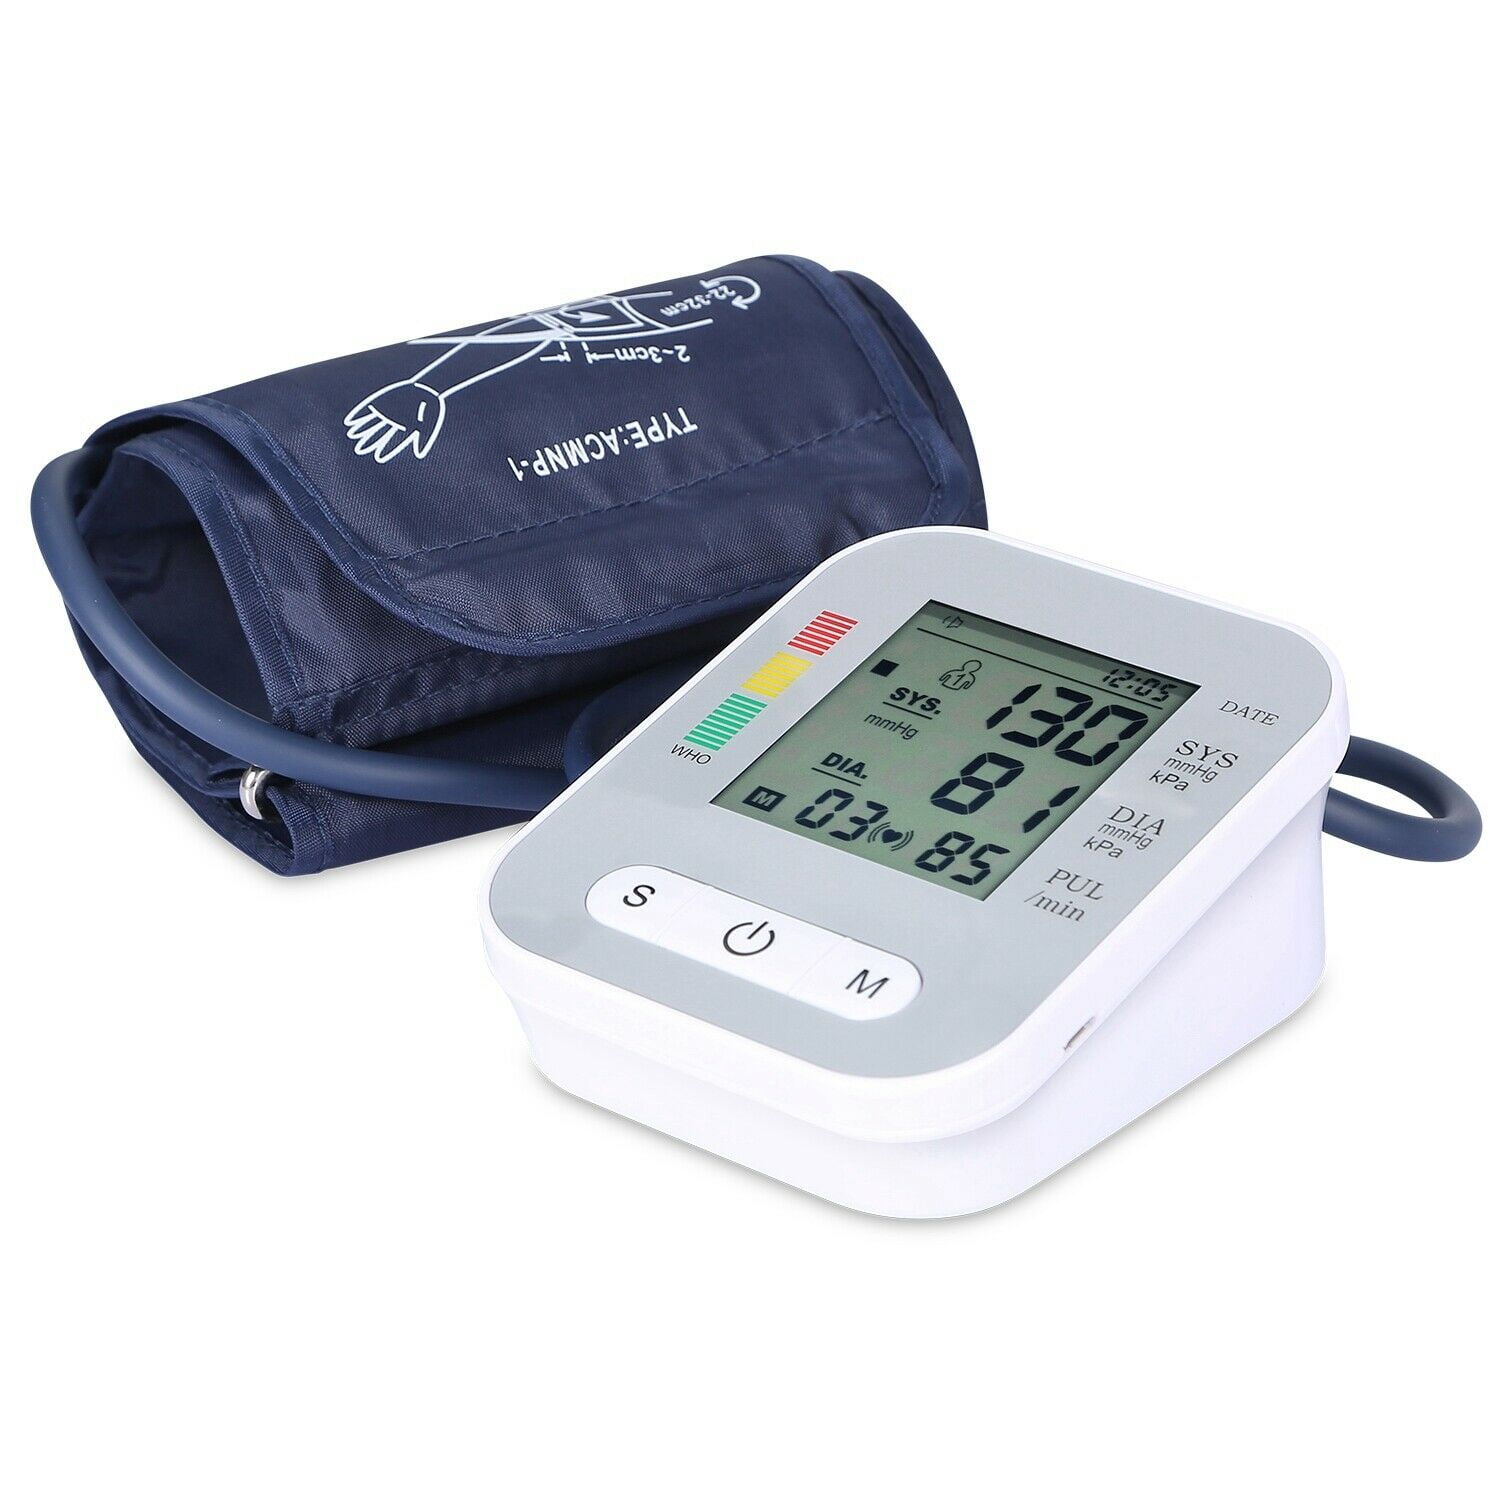 Equate 8500 Series Premium Upper Arm Blood Pressure Monitor